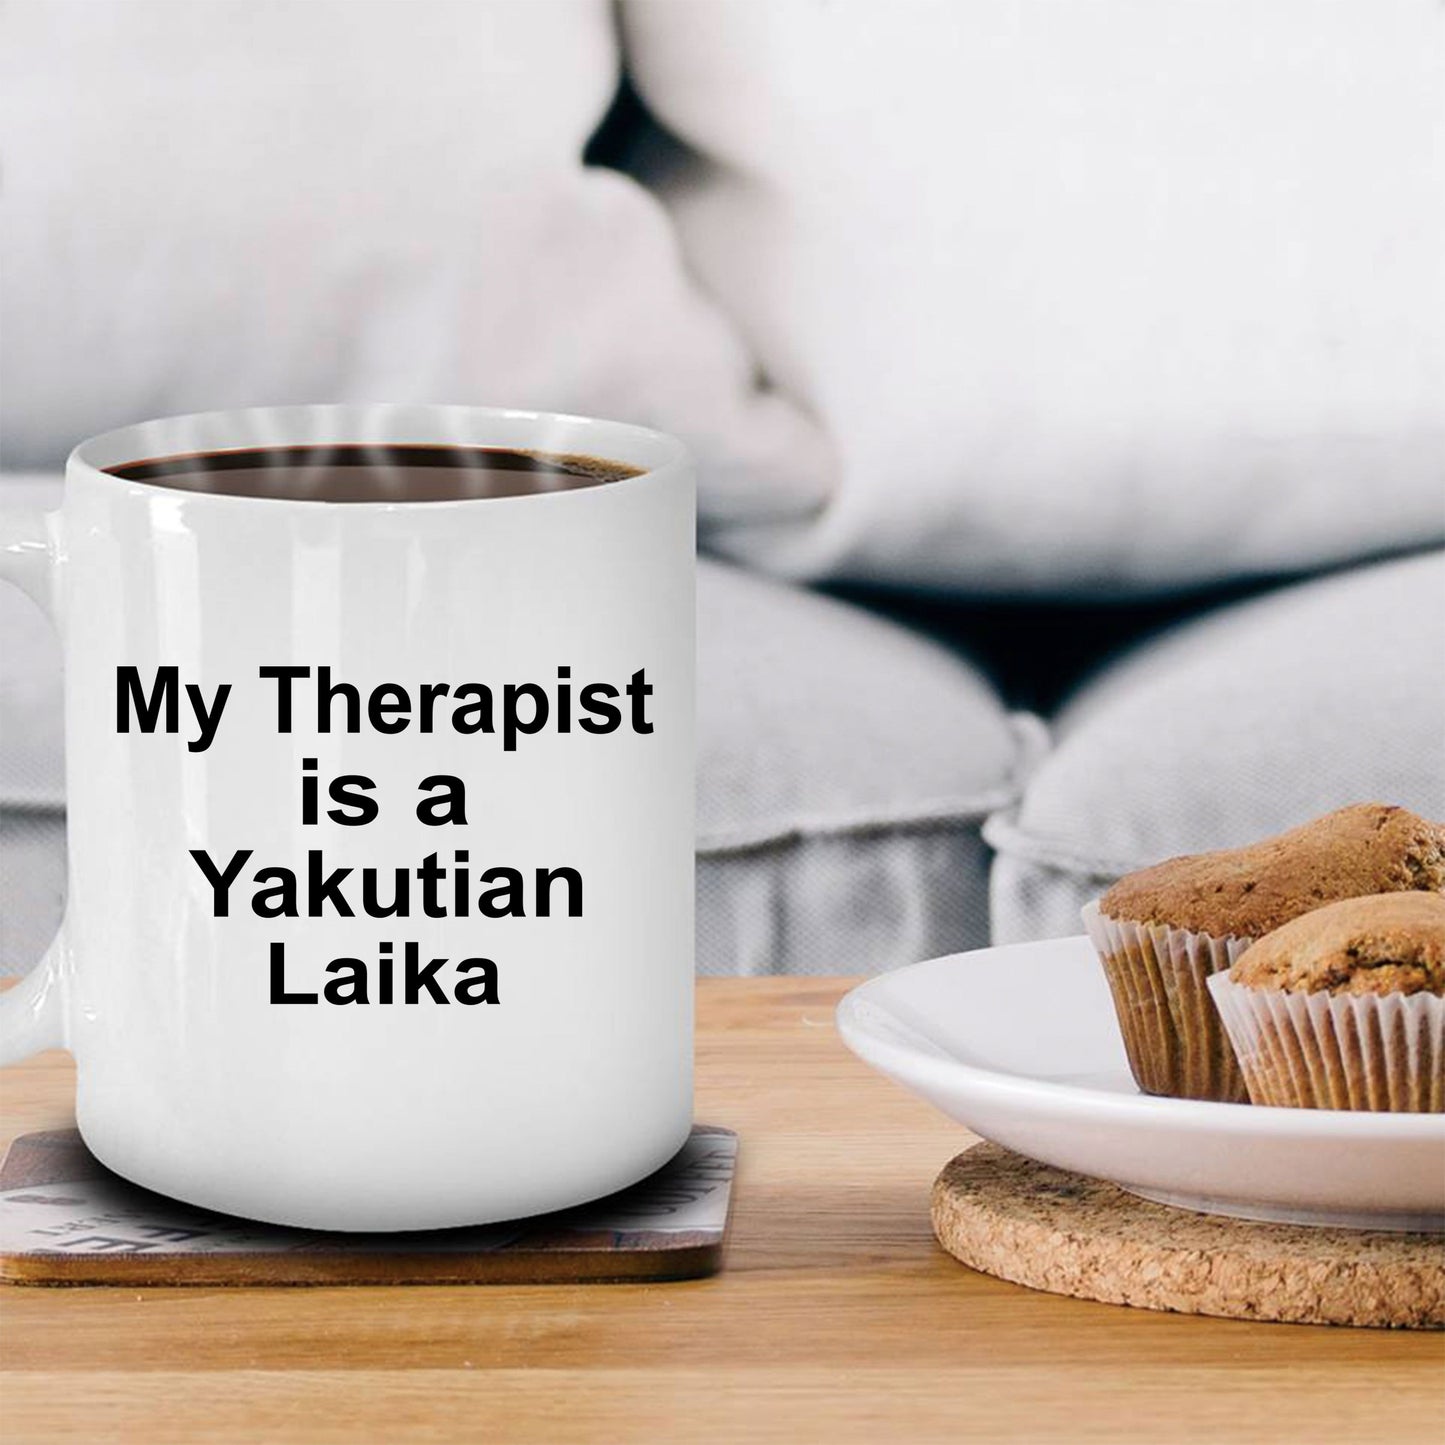 Yakutian Laika Dog Therapist Coffee Mug